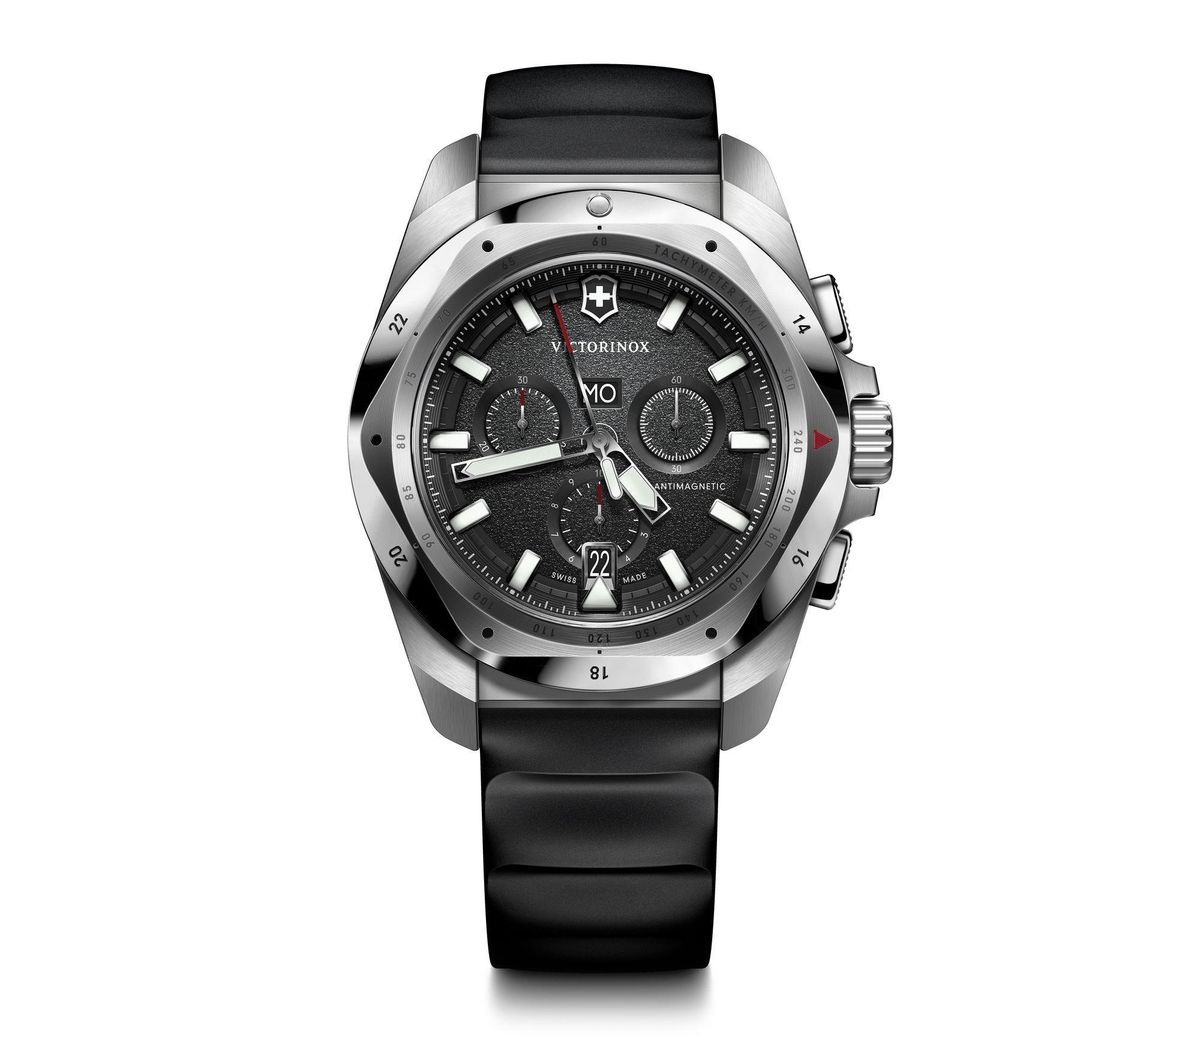 ビクトリノックス ビジネス腕時計 メンズ ビクトリノックス VICTORINOX 241983 イノックス クロノ 43mm 国内正規品 腕時計